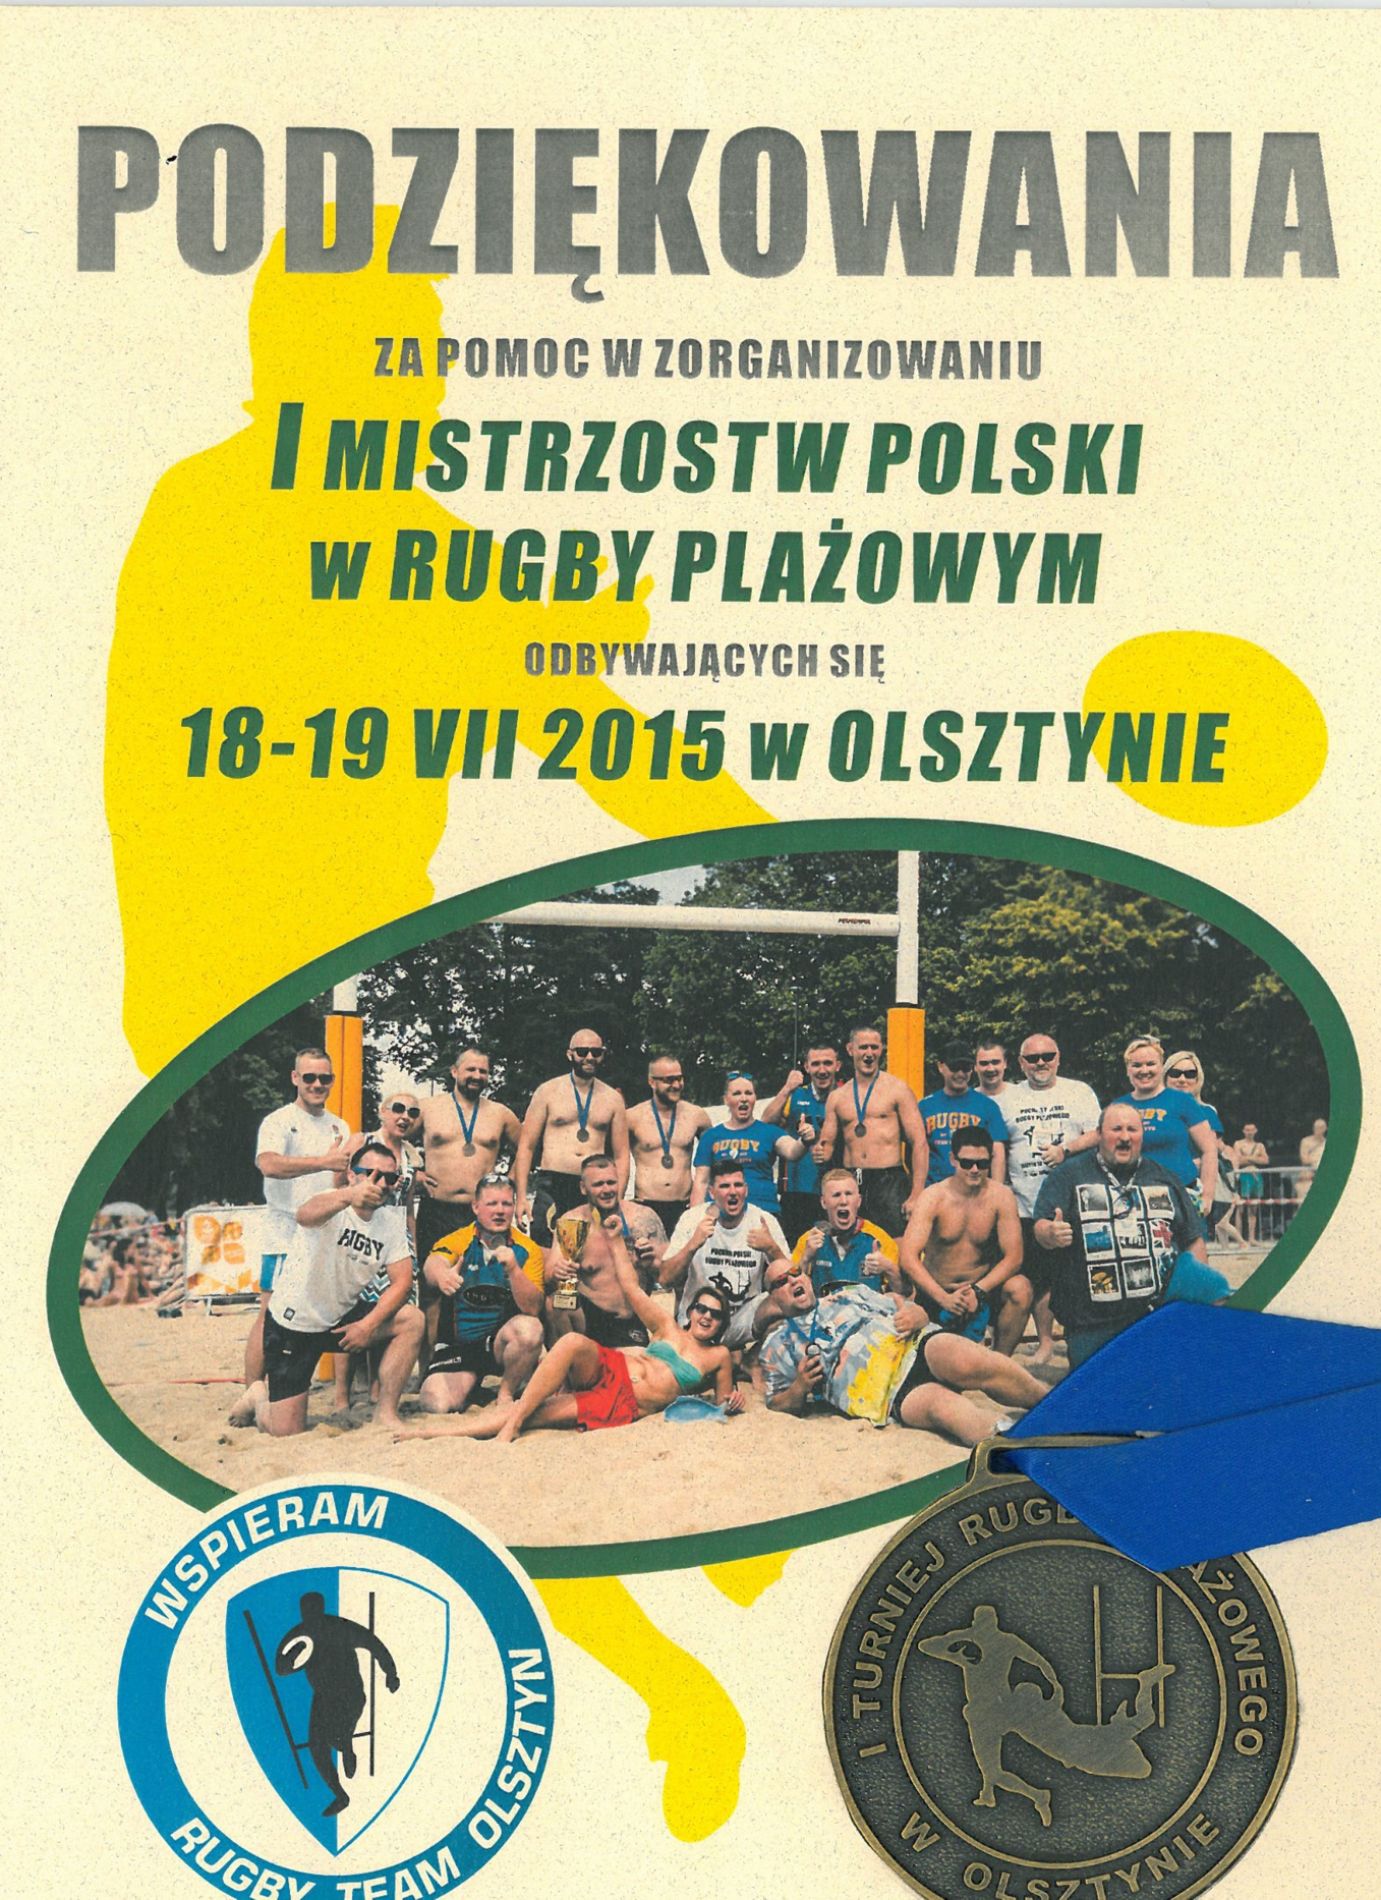 Podziękowanie za organizacje I Mistrzostw Polski w Rugby Plażowym